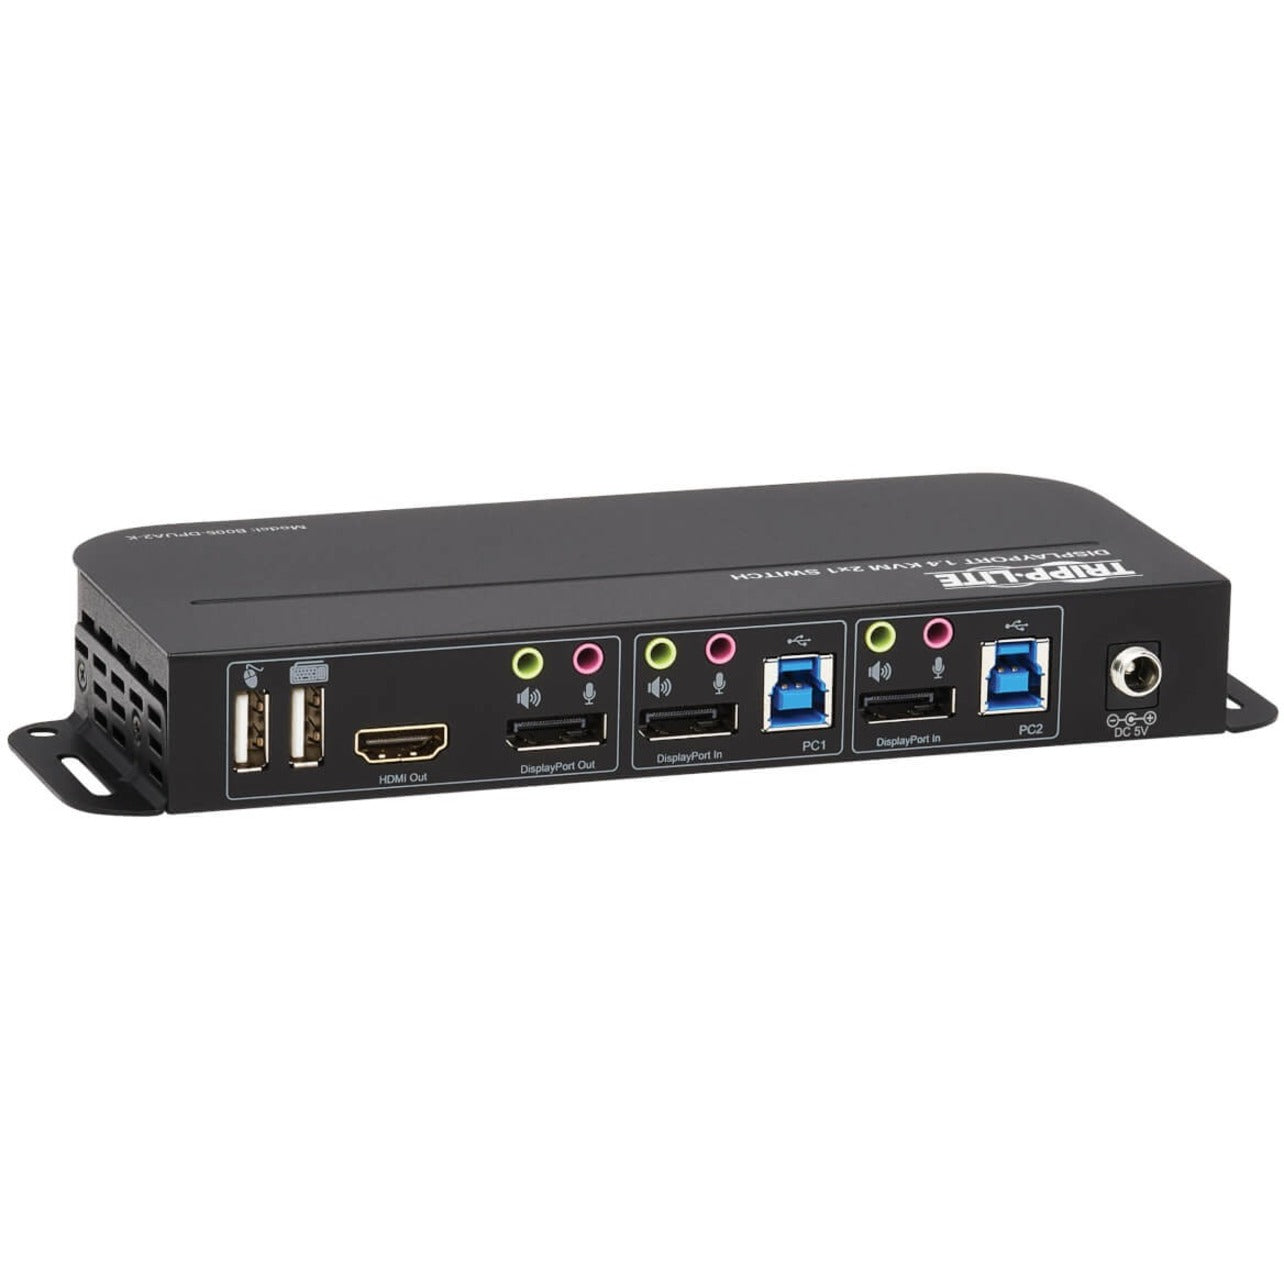 Tripp Lite B005-DPUA2-K 2-Puerto DisplayPort/USB Conmutador KVM Resolución 4096 x 2160 Garantía de 3 años